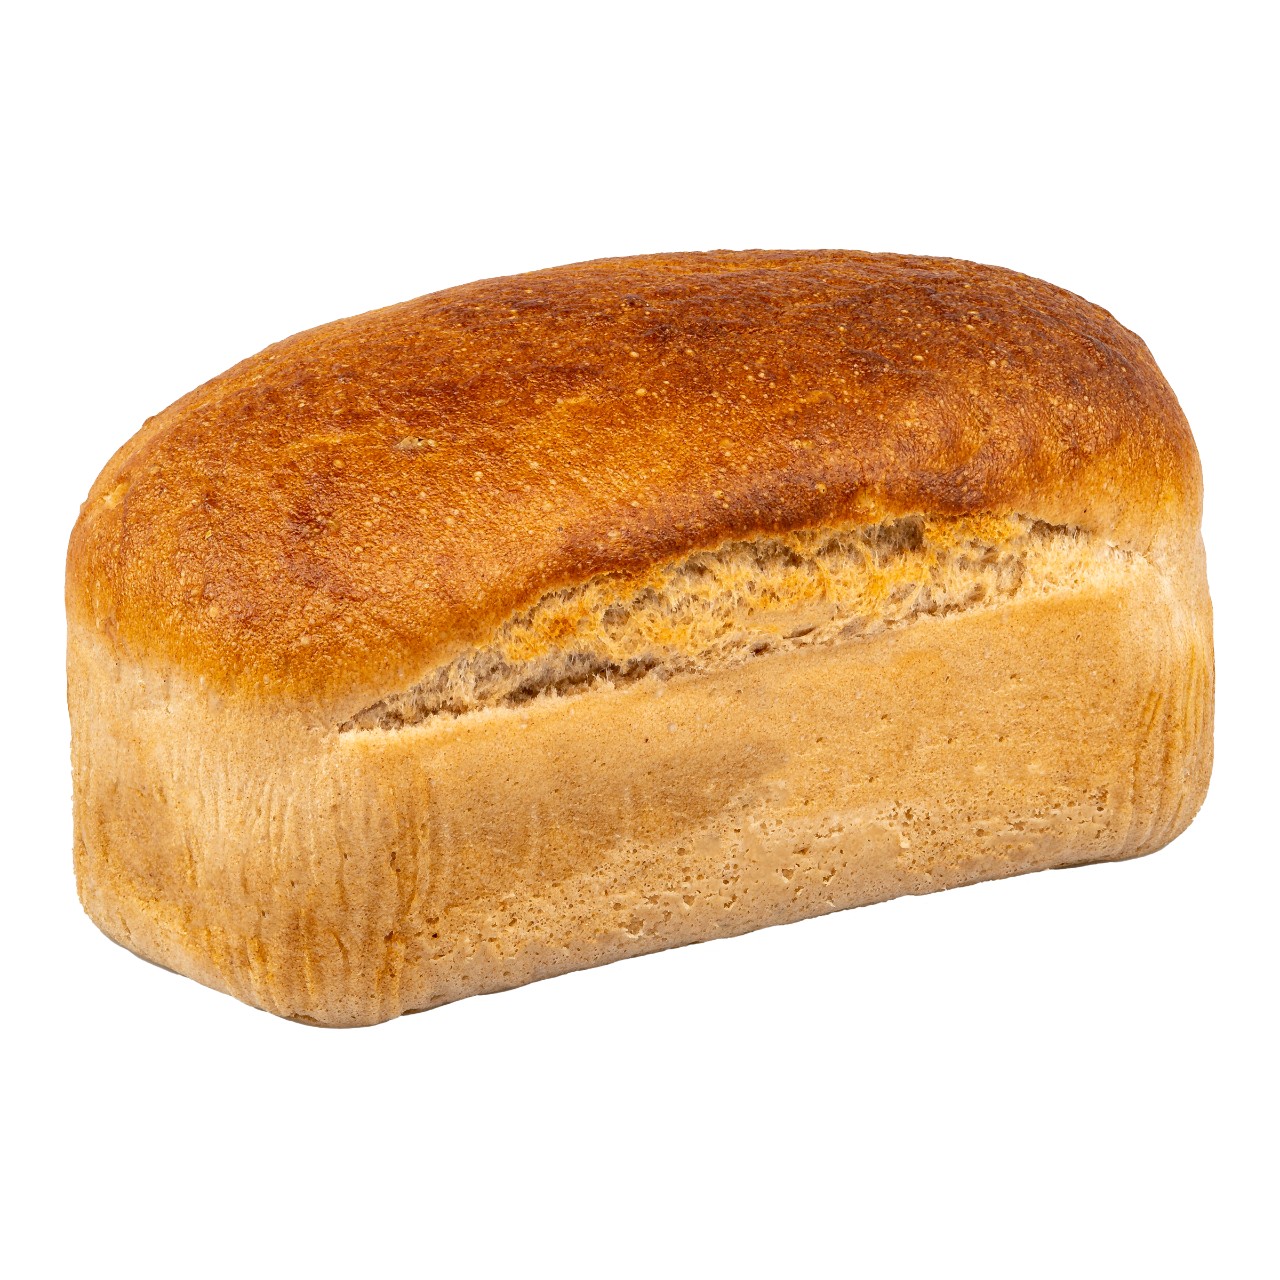 Brood bruin, glutenvrij